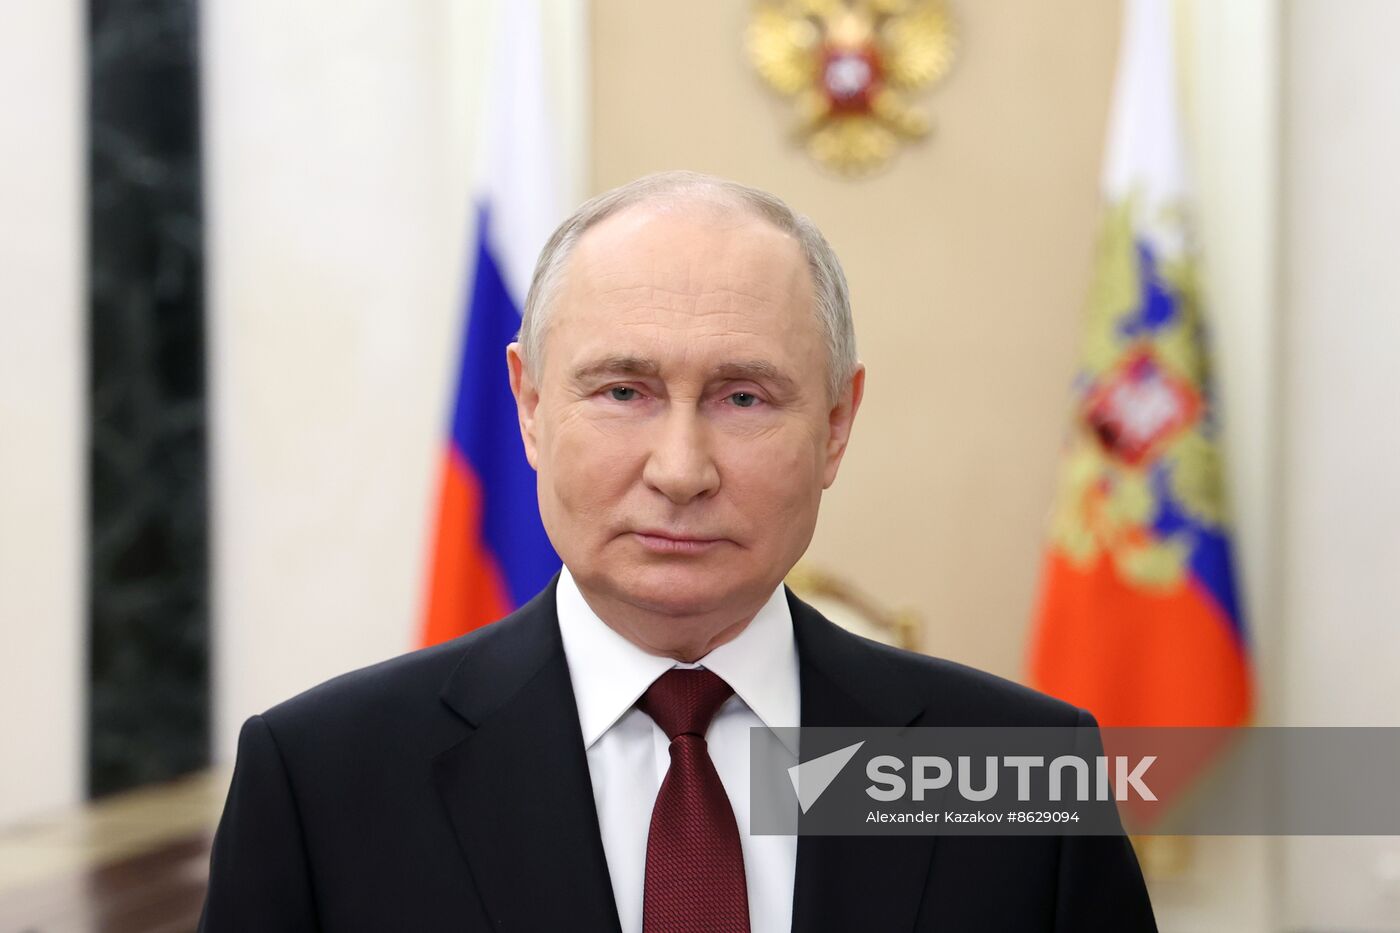 Russia Putin Znanie Society Prize Ceremony